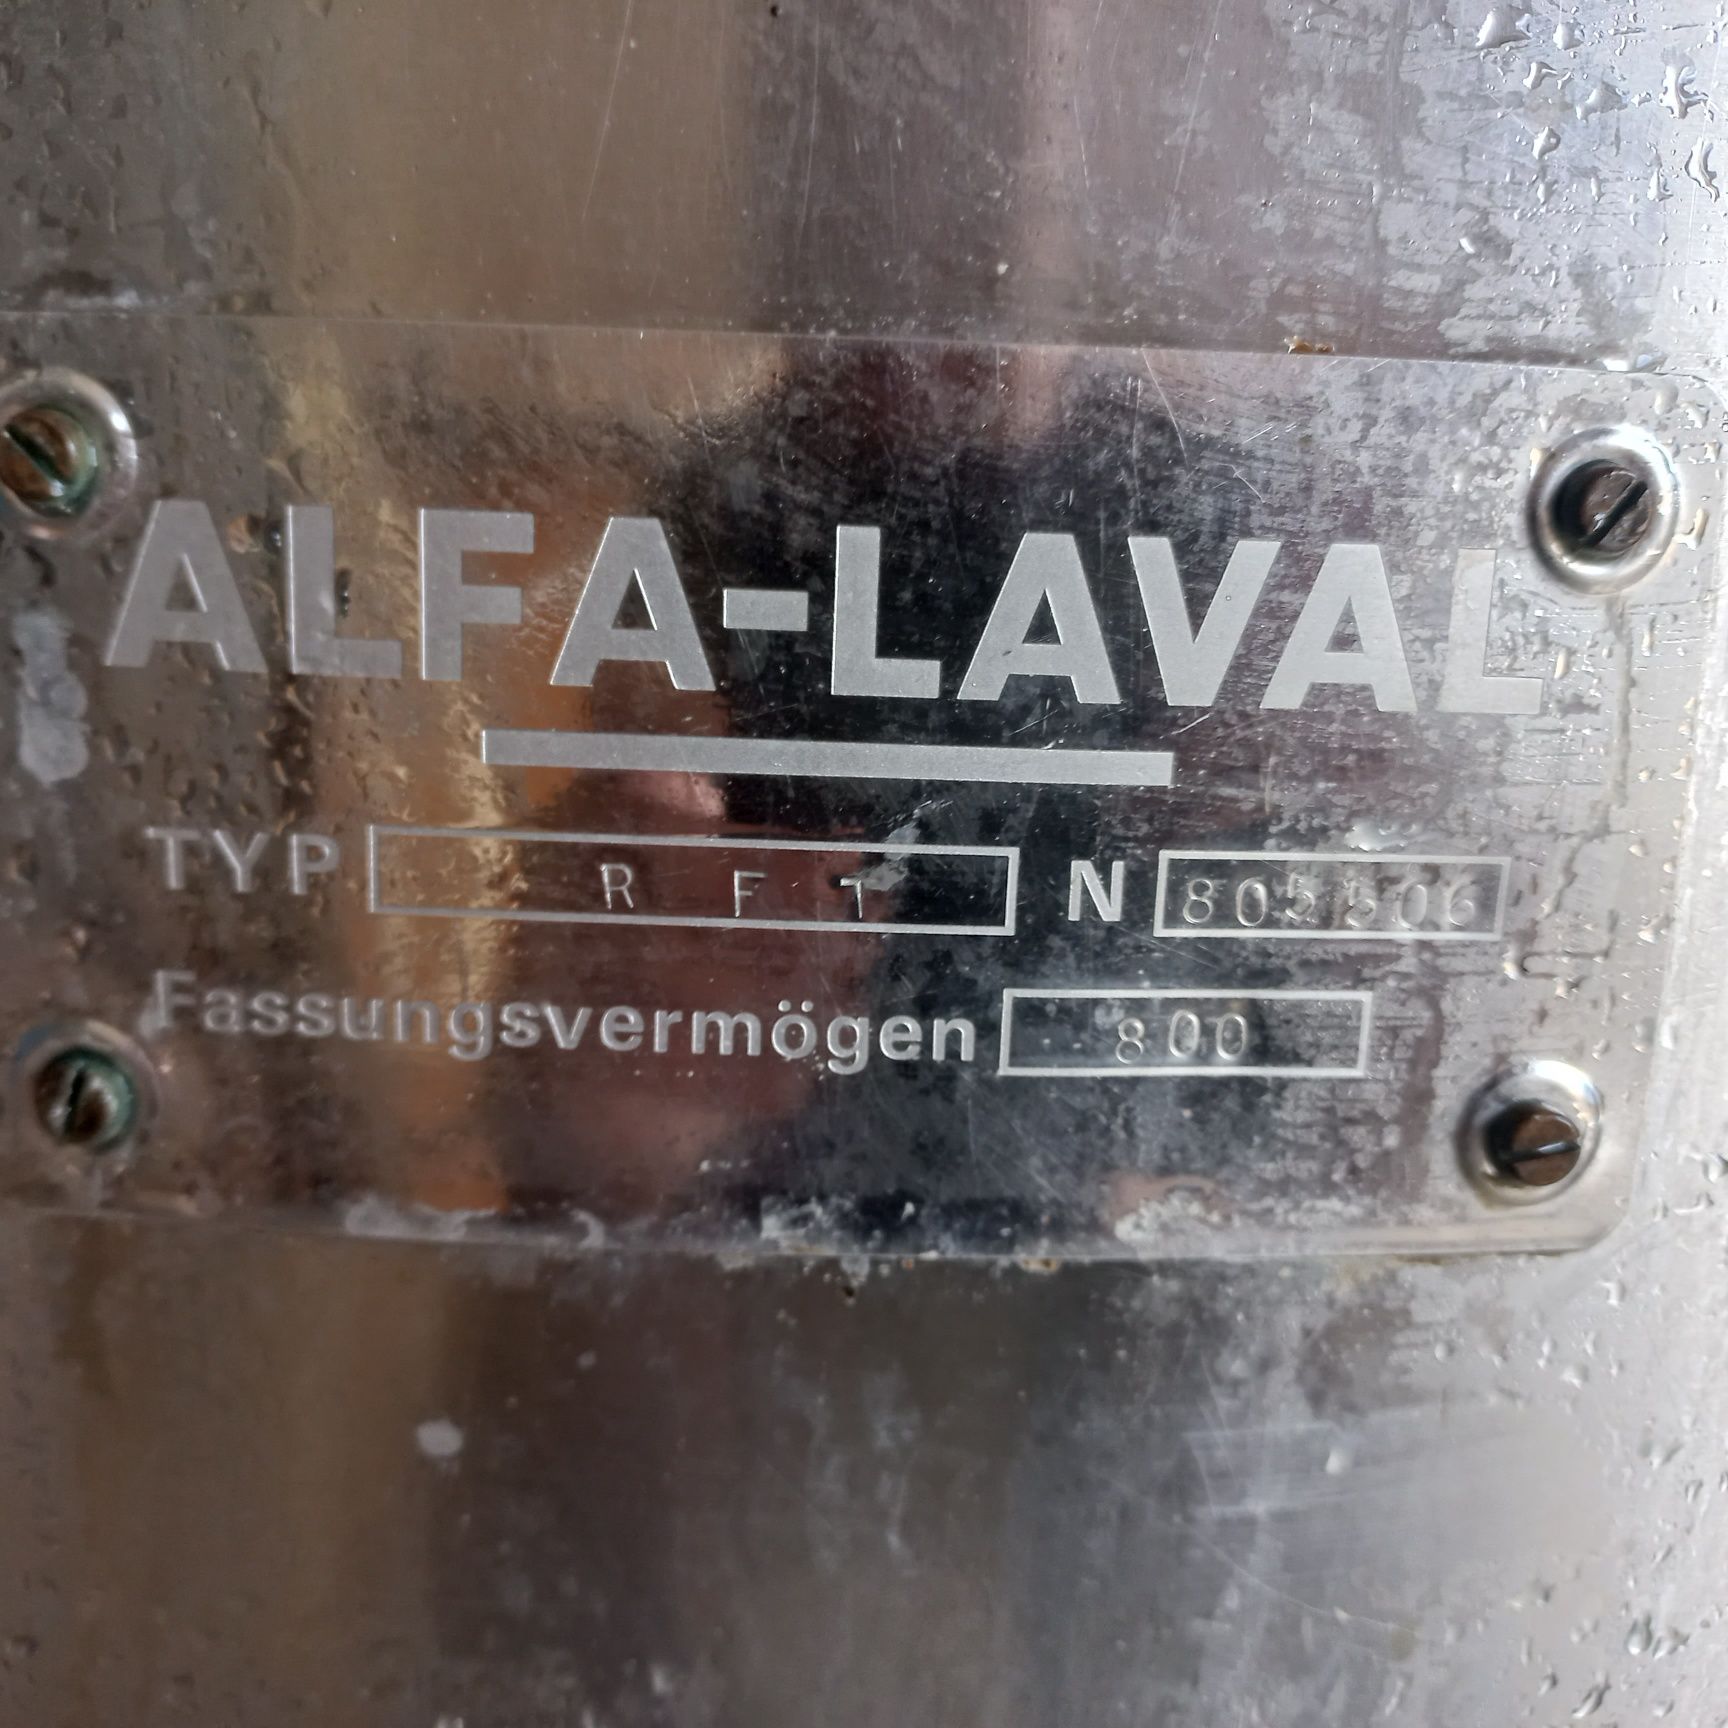 Schładzalnik Alfa Laval 800 zbiornik na mleko, chłodnia